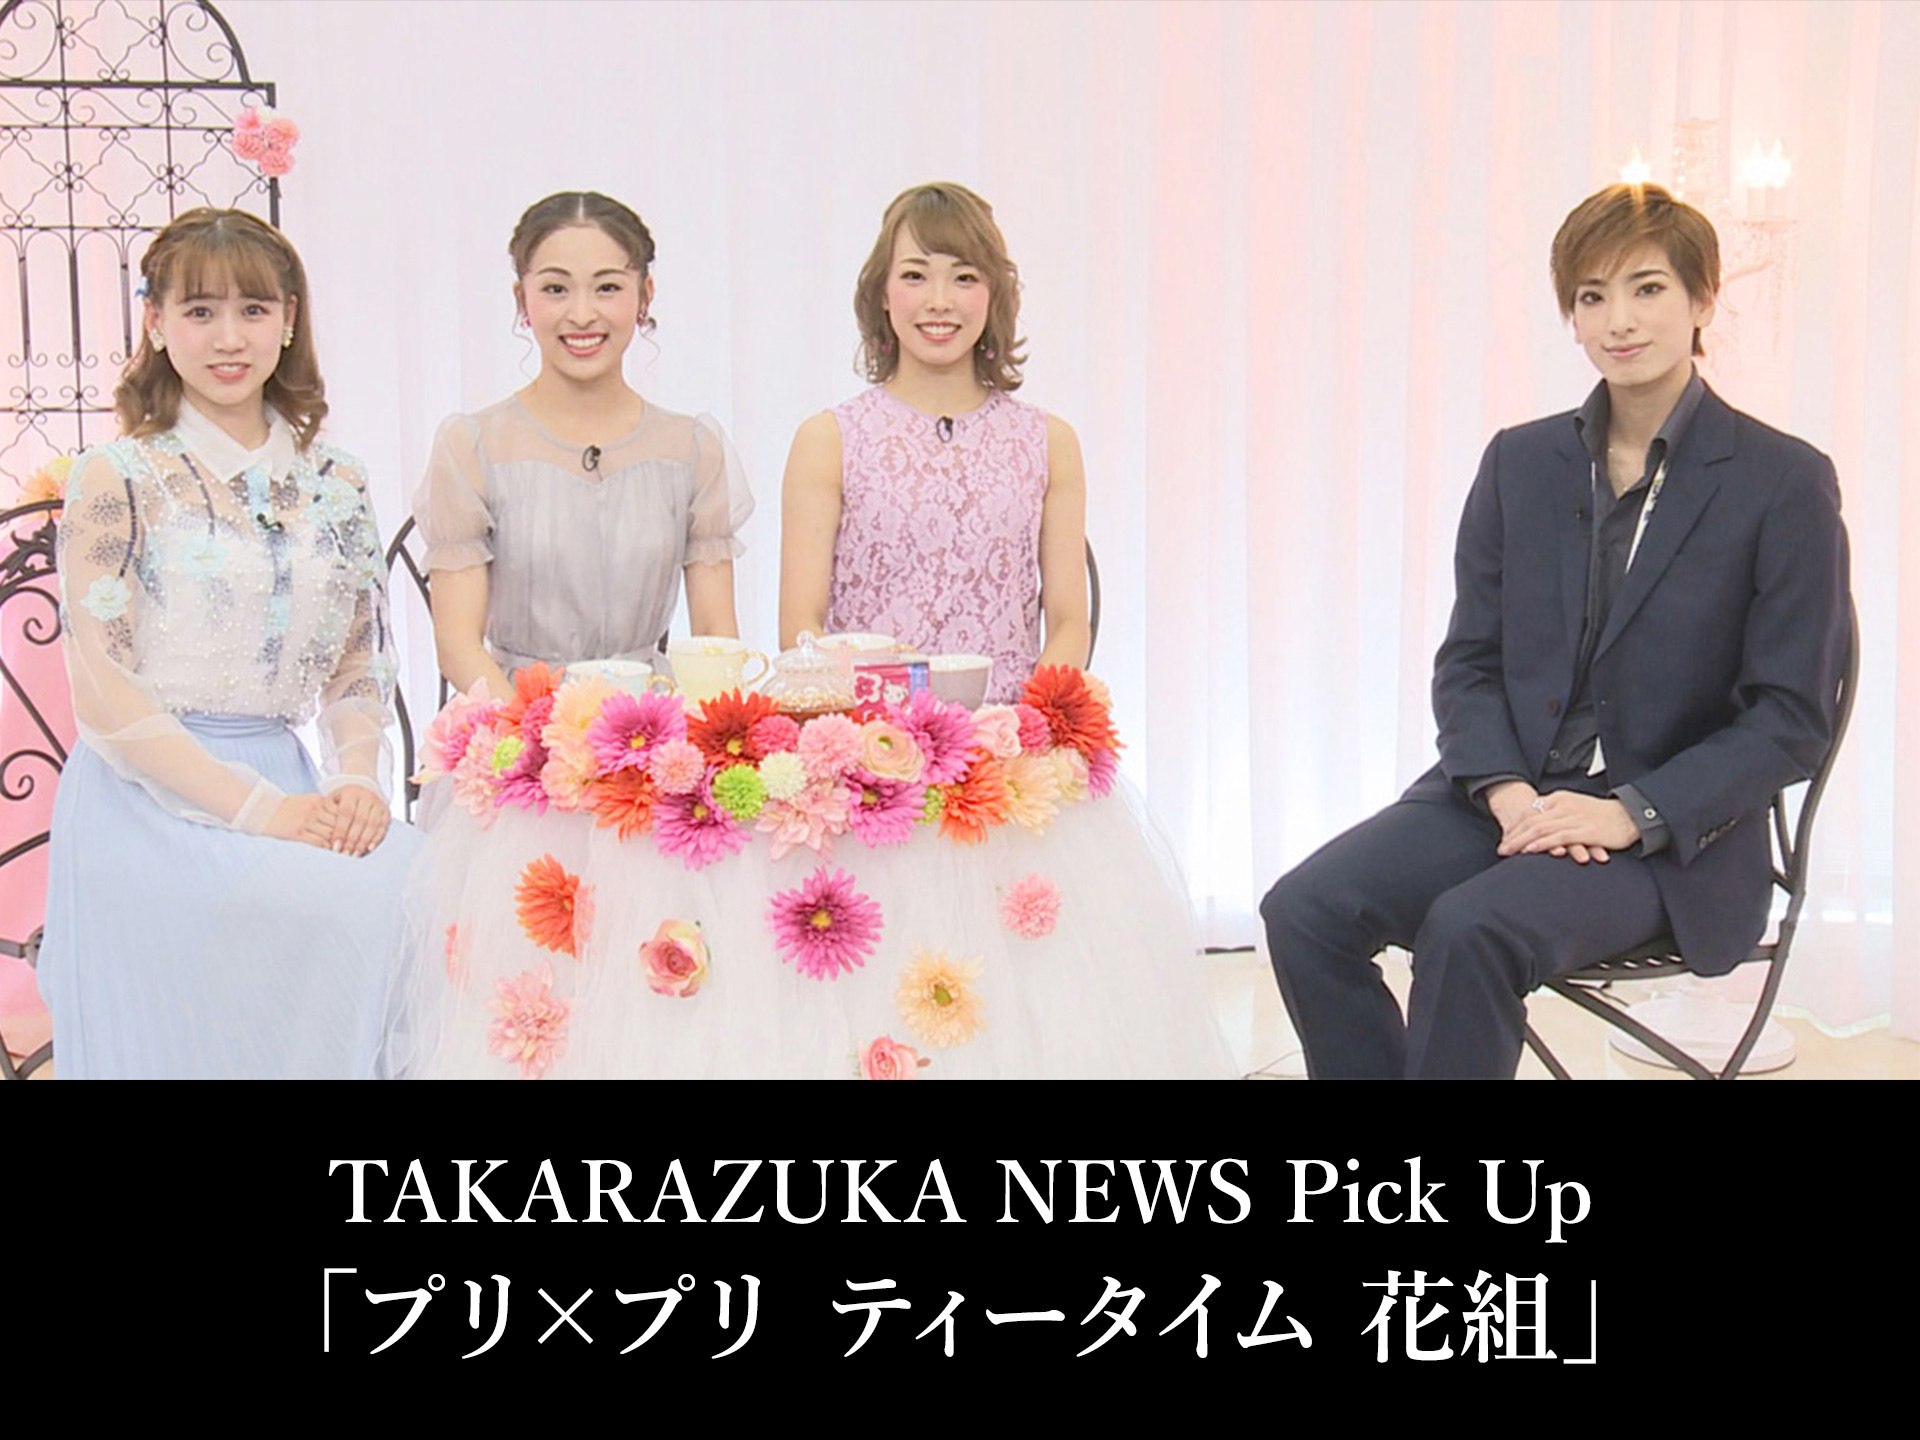 バラエティ Takarazuka News Pick Up プリ プリ ティータイム 花組 の動画 初月無料 動画配信サービスのビデオマーケット